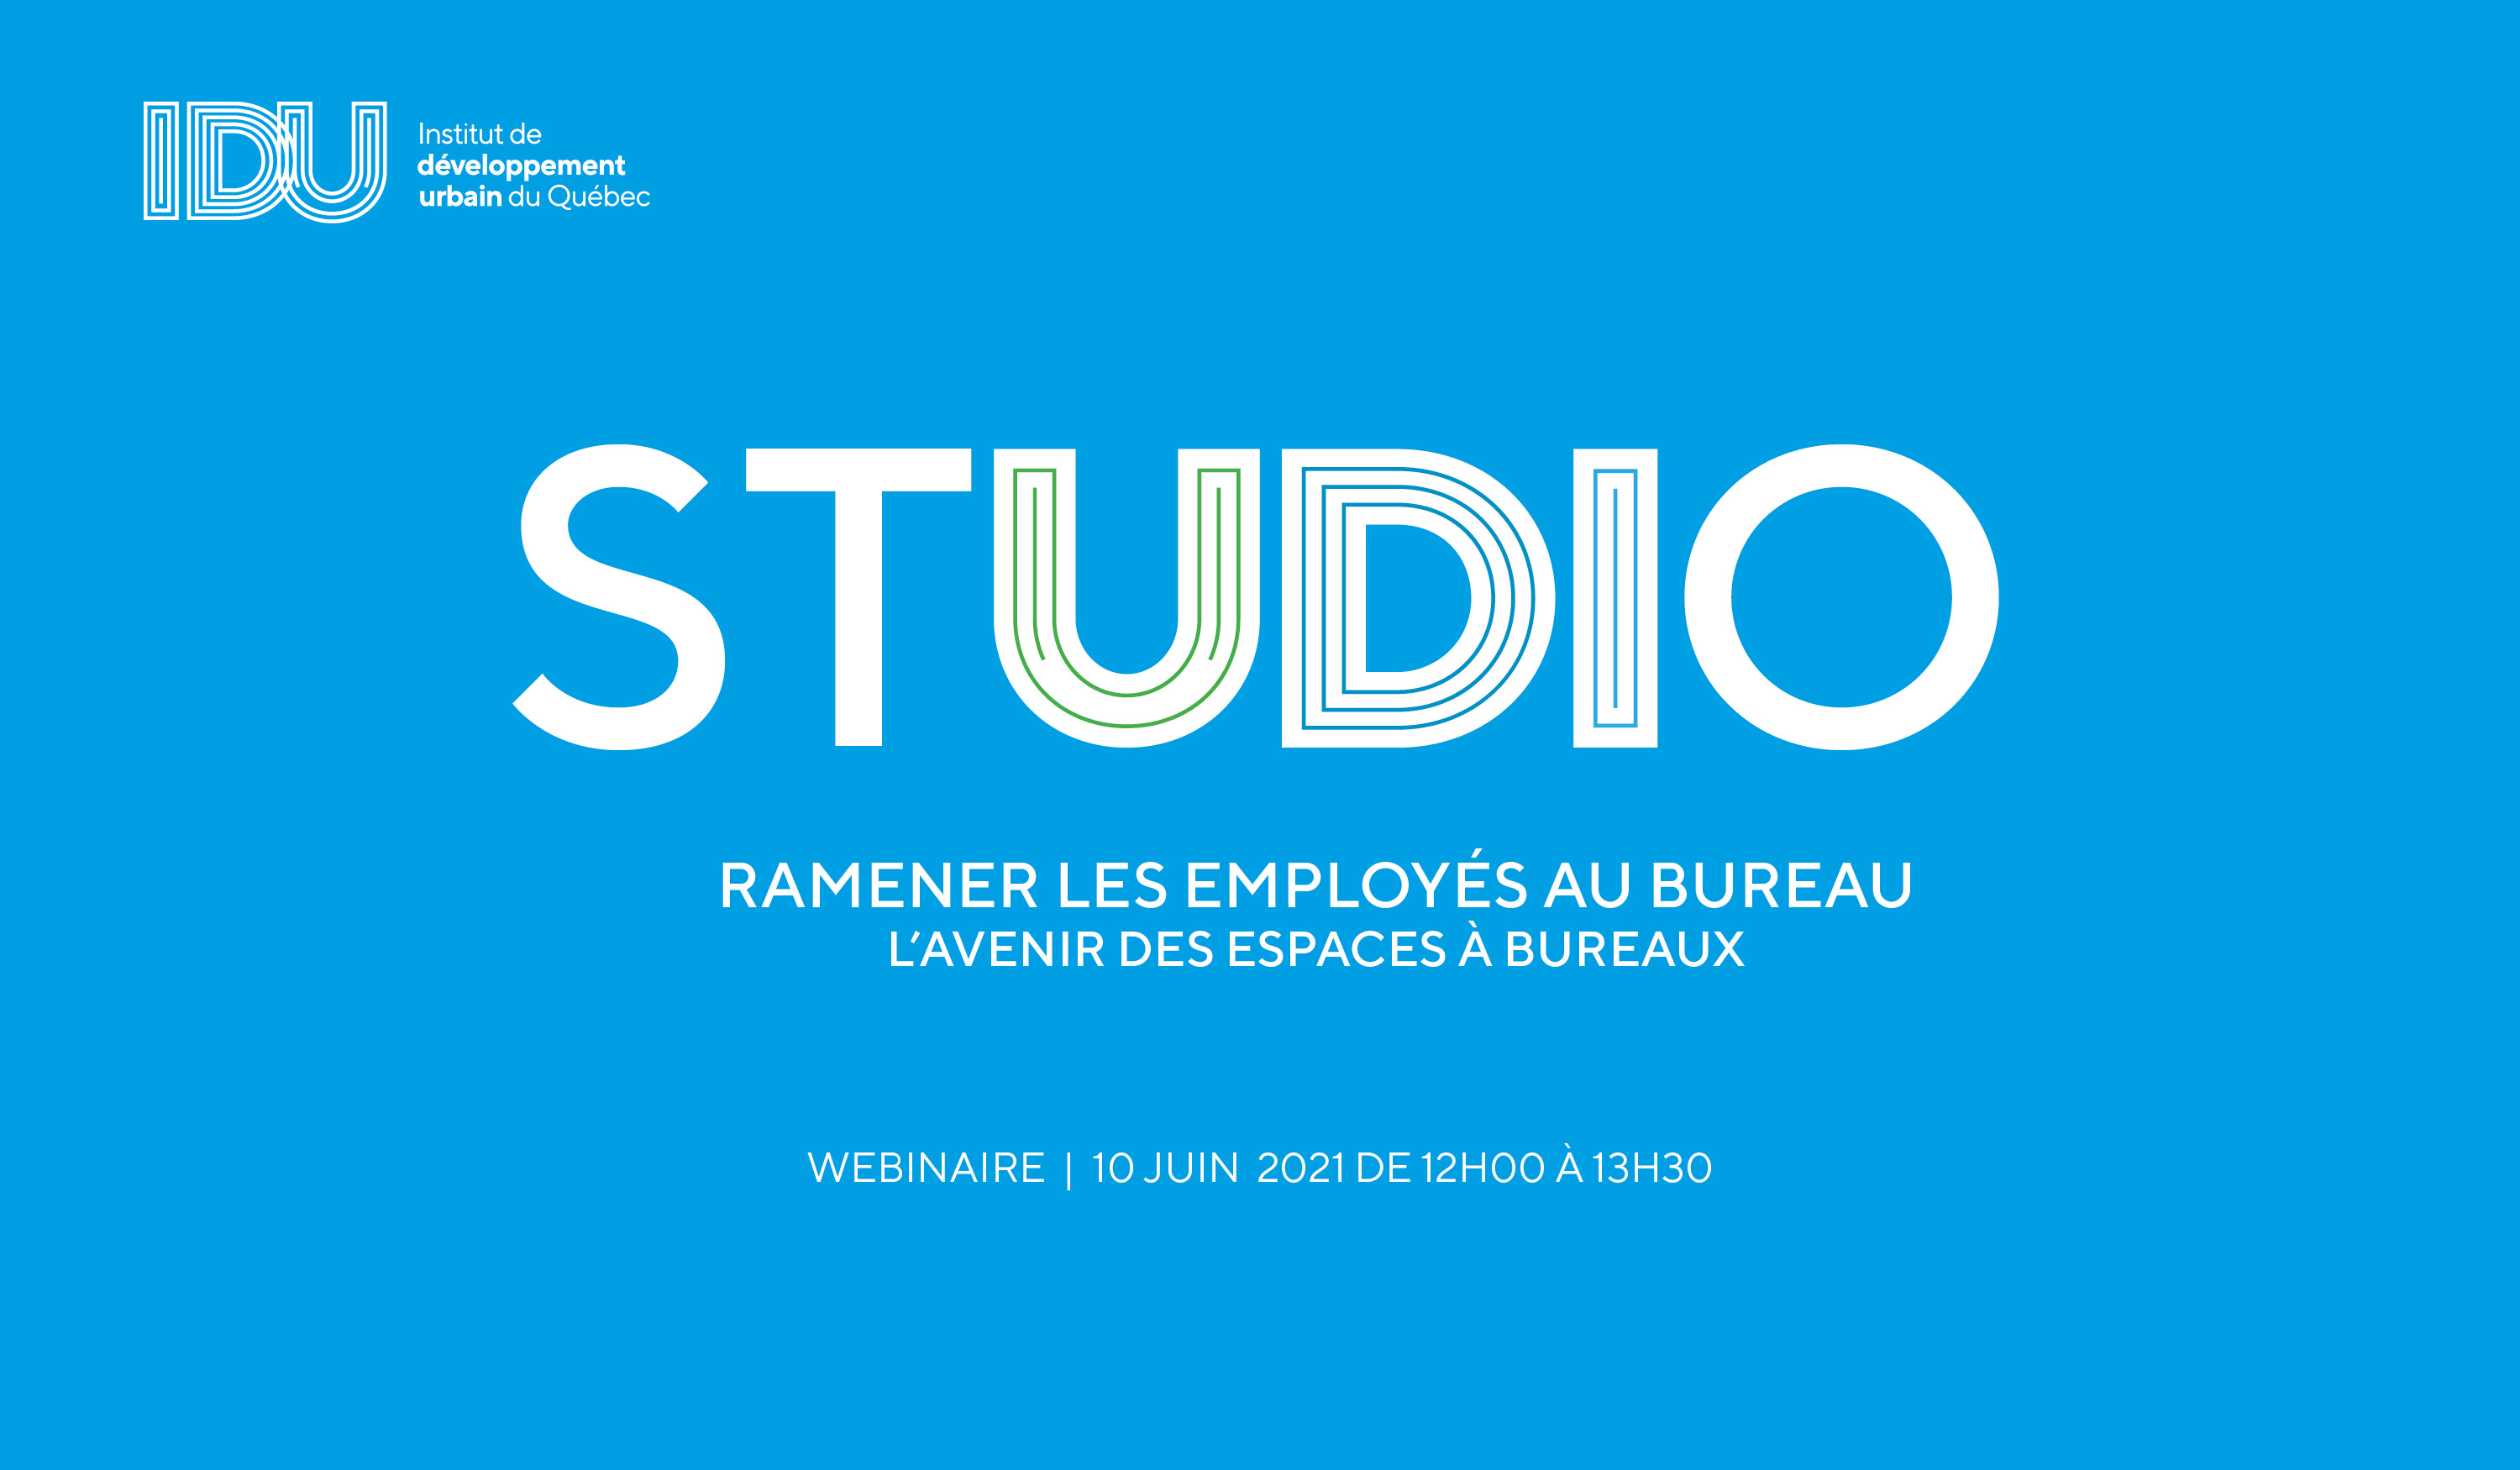 STUDIO IDU - Ramener les employés au bureau - L'avenir des espaces à bureaux